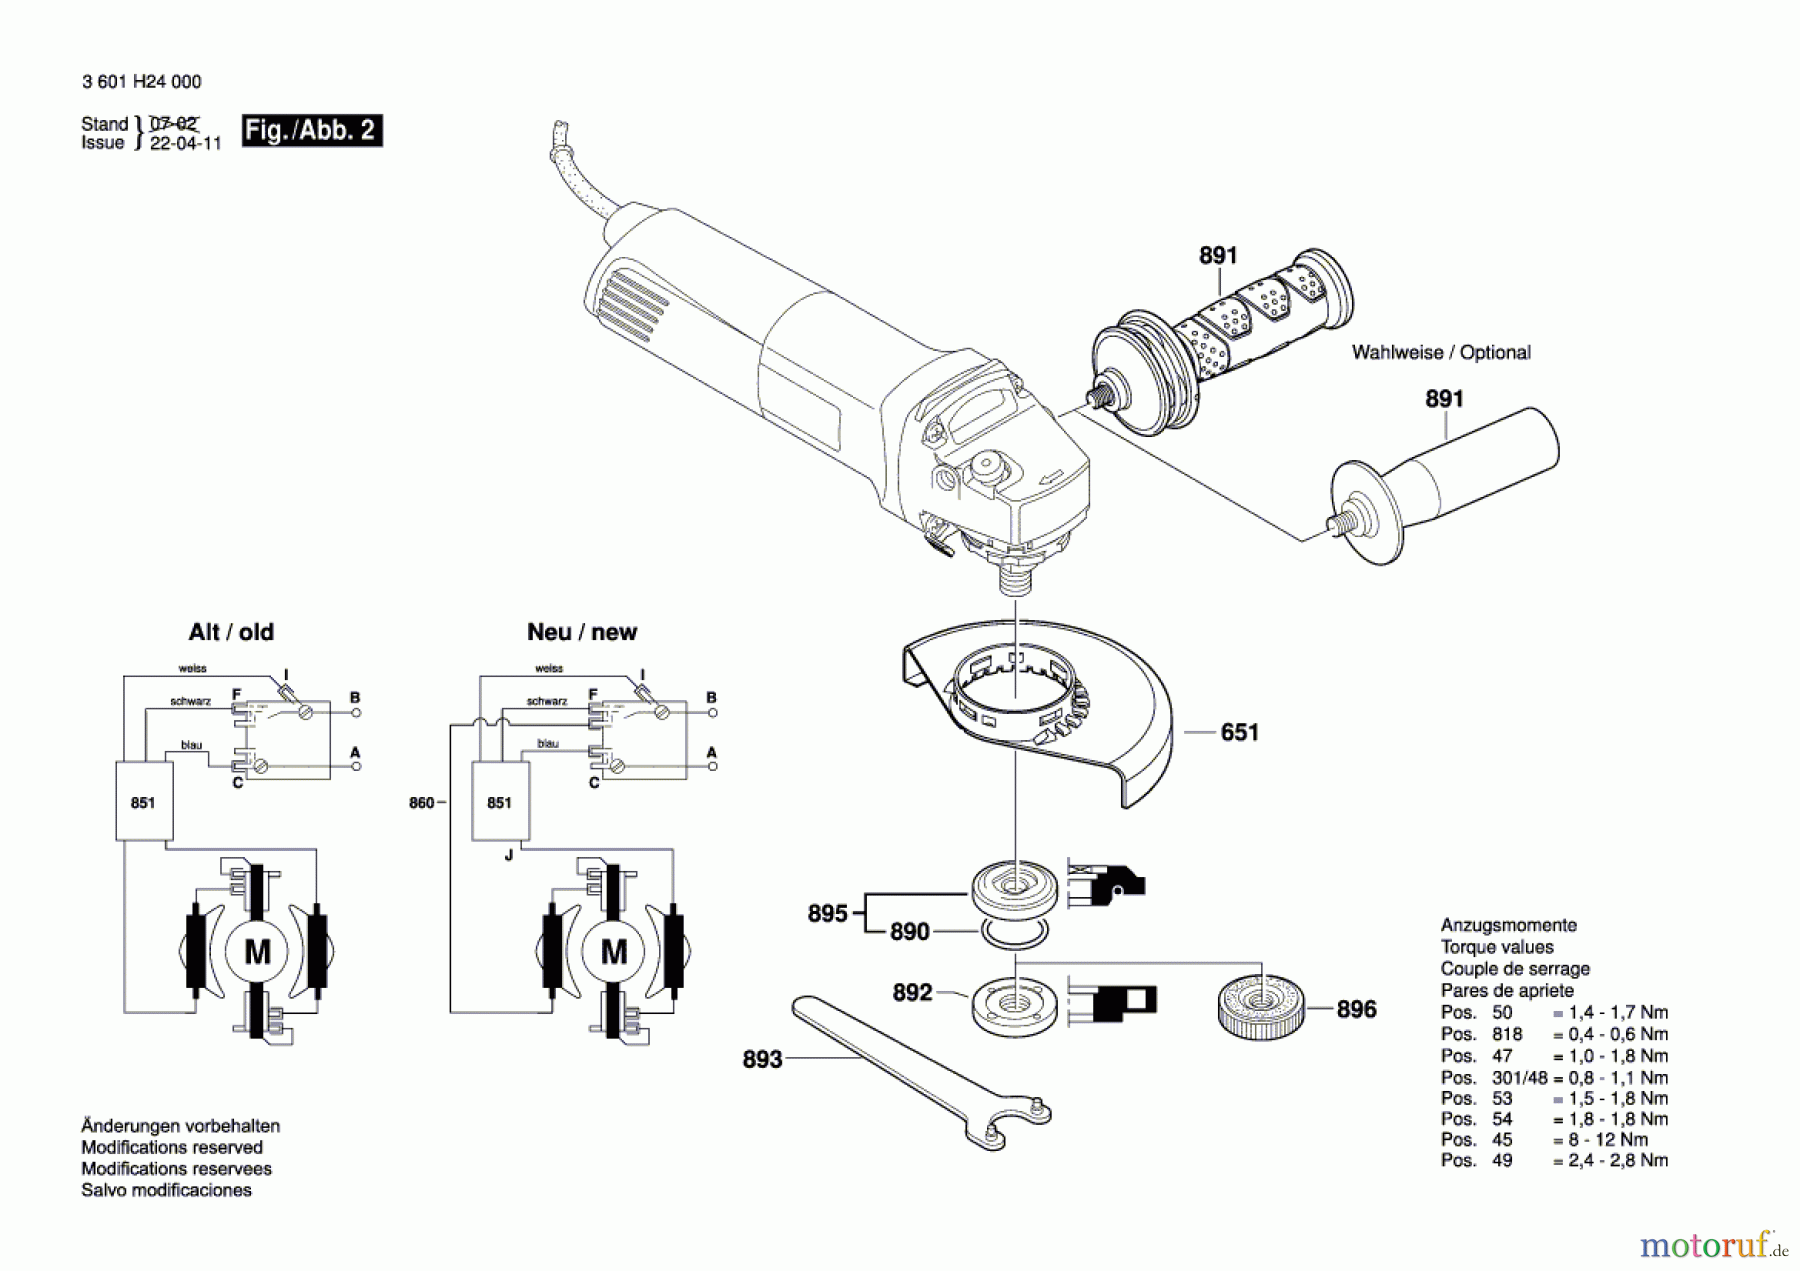  Bosch Werkzeug Winkelschleifer GWS 14-125 CIT Seite 2